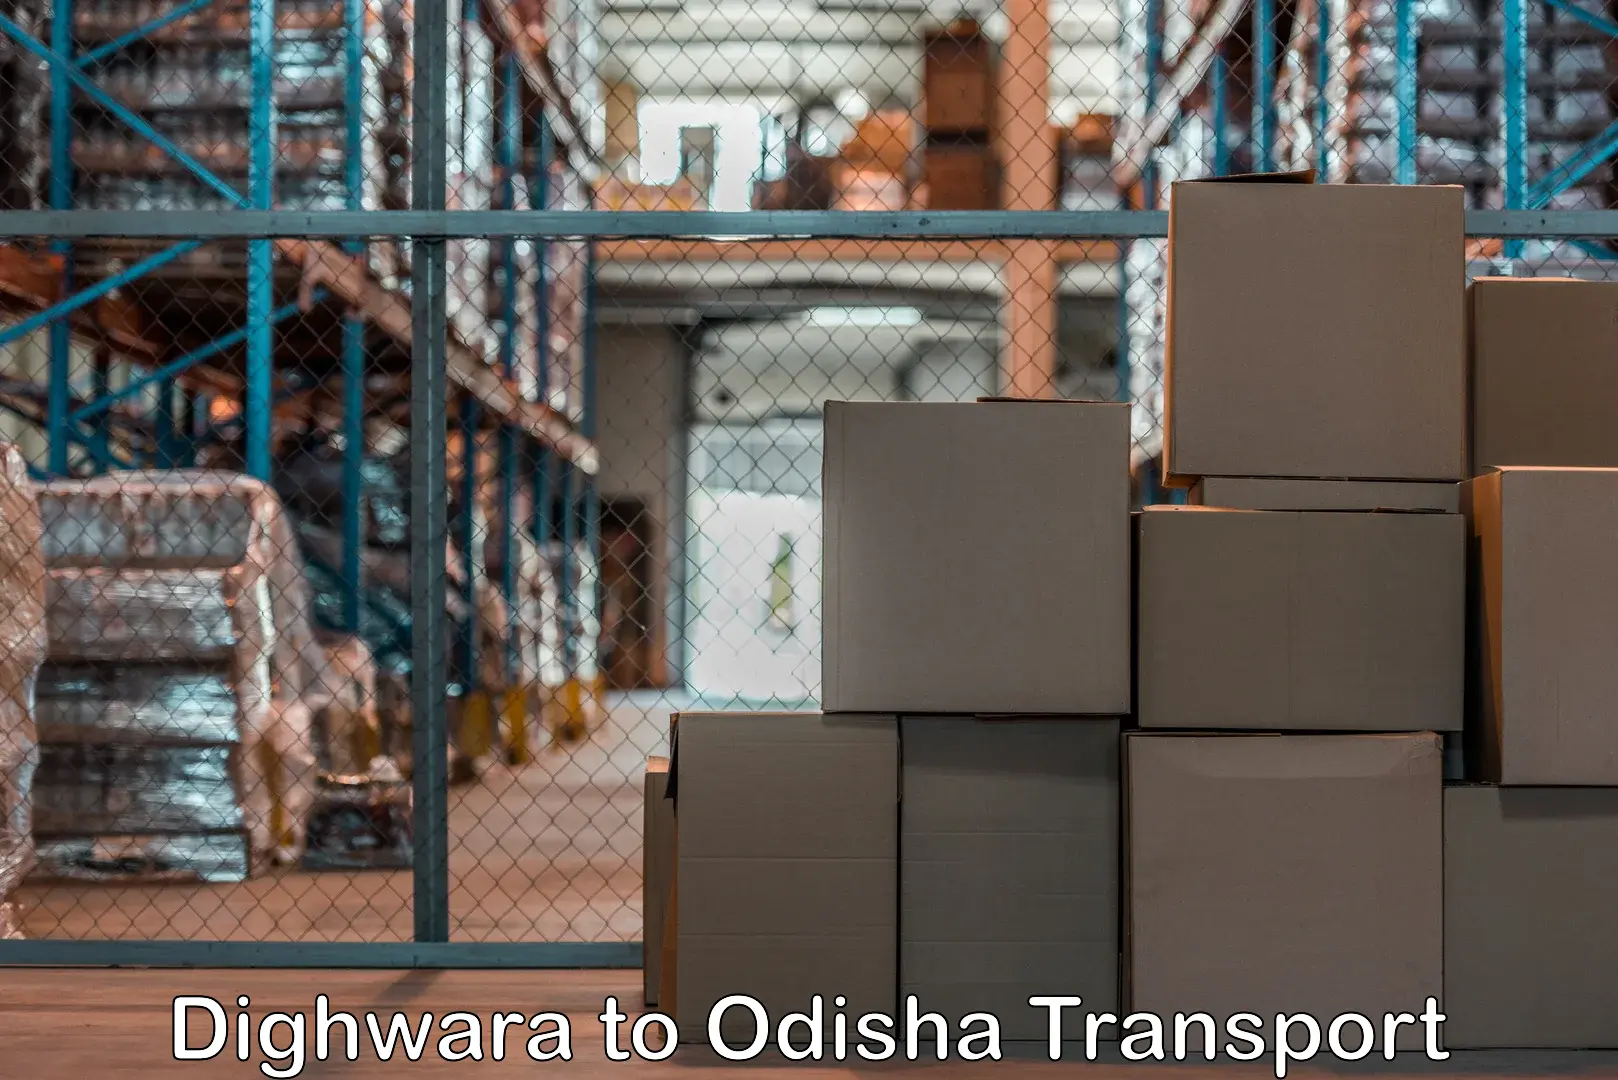 Road transport online services Dighwara to Kuchinda